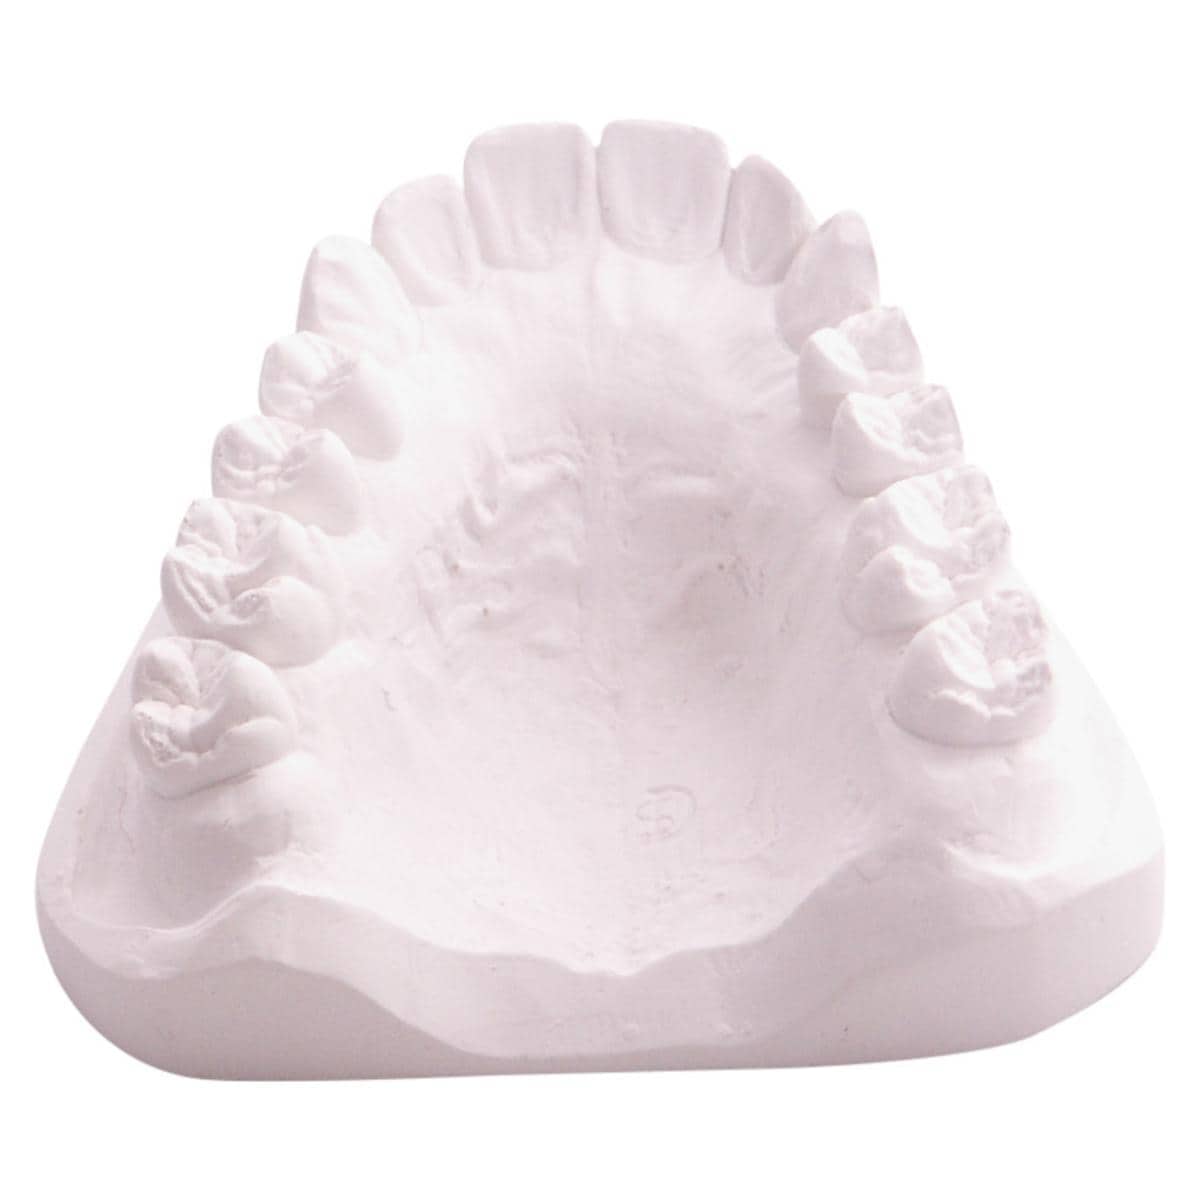 dento-dur® KFO 3D - Weiß, Packung 22 kg